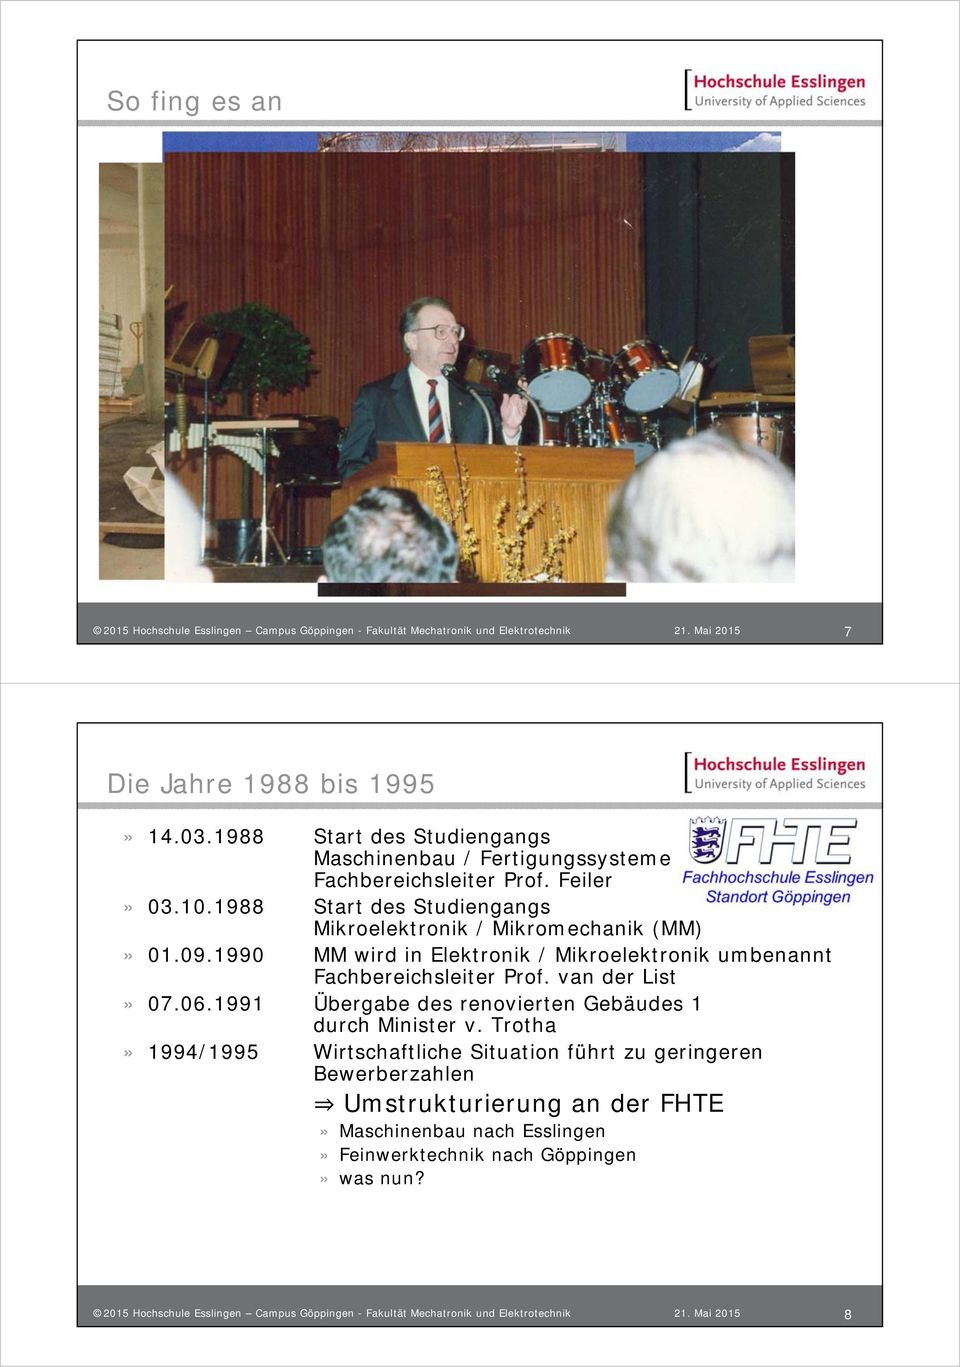 1990 MM wird in Elektronik / Mikroelektronik umbenannt Fachbereichsleiter Prof. van der List» 07.06.